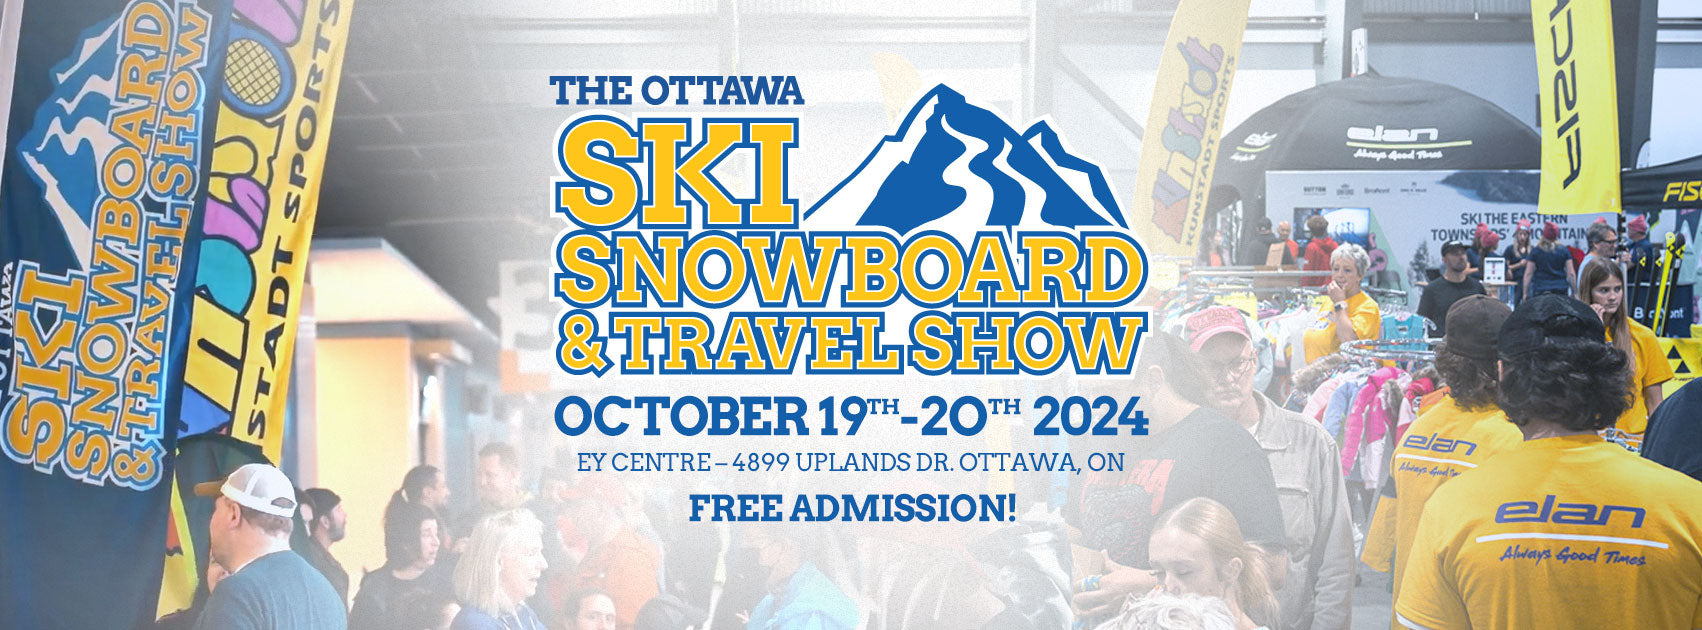 Ottawa Ski & Snowboard Show